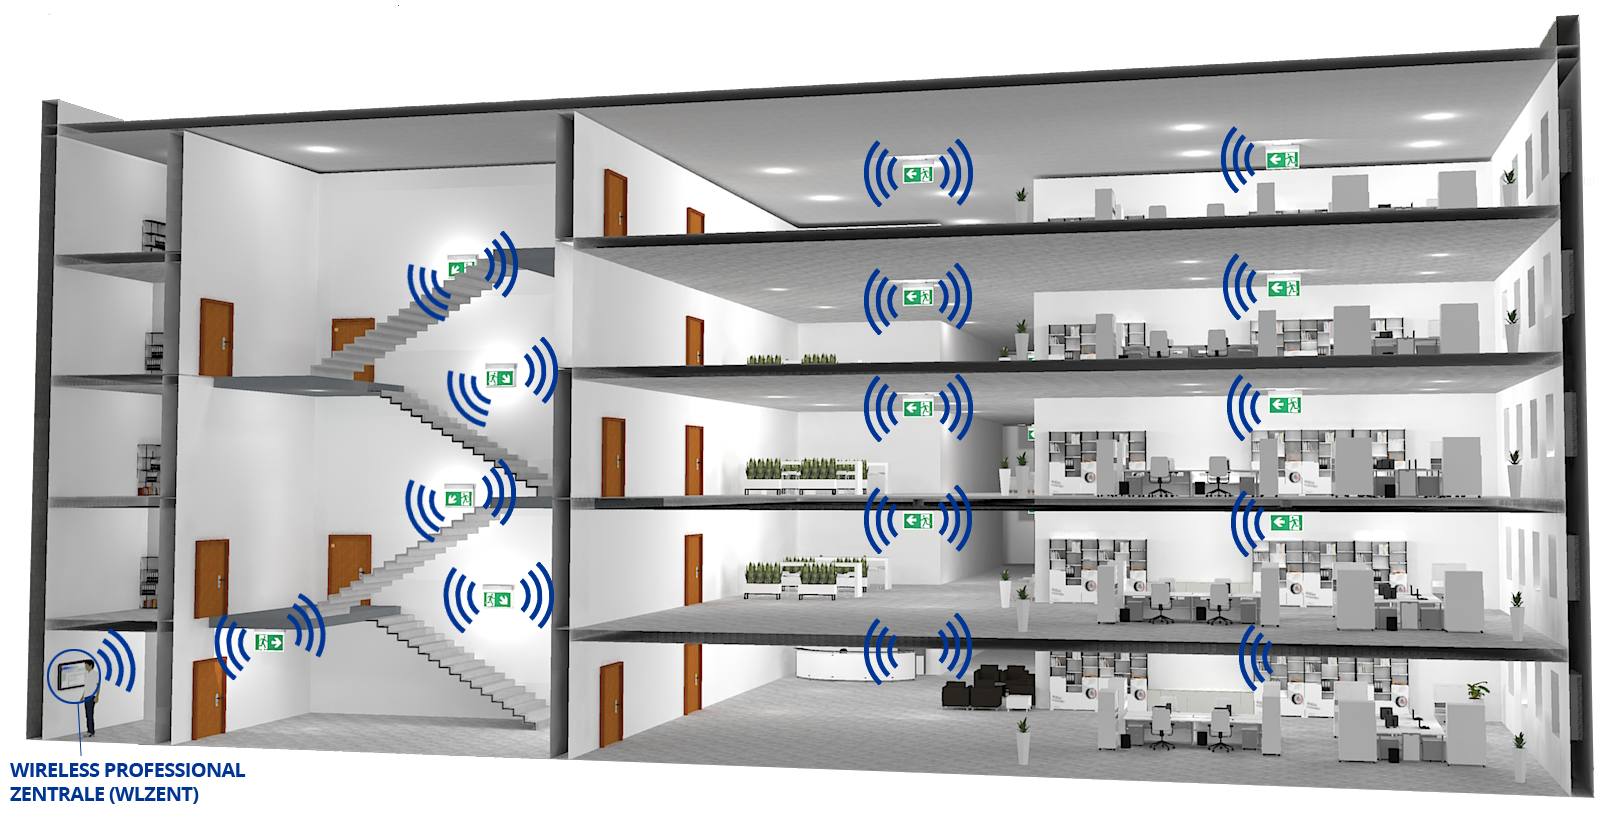 Sicher und einfach: Mit dem Wireless-System ist das Warten der Not- und Sicherheitsleuchten so sicher wie nie. (Bild: RP-Technik GmbH)